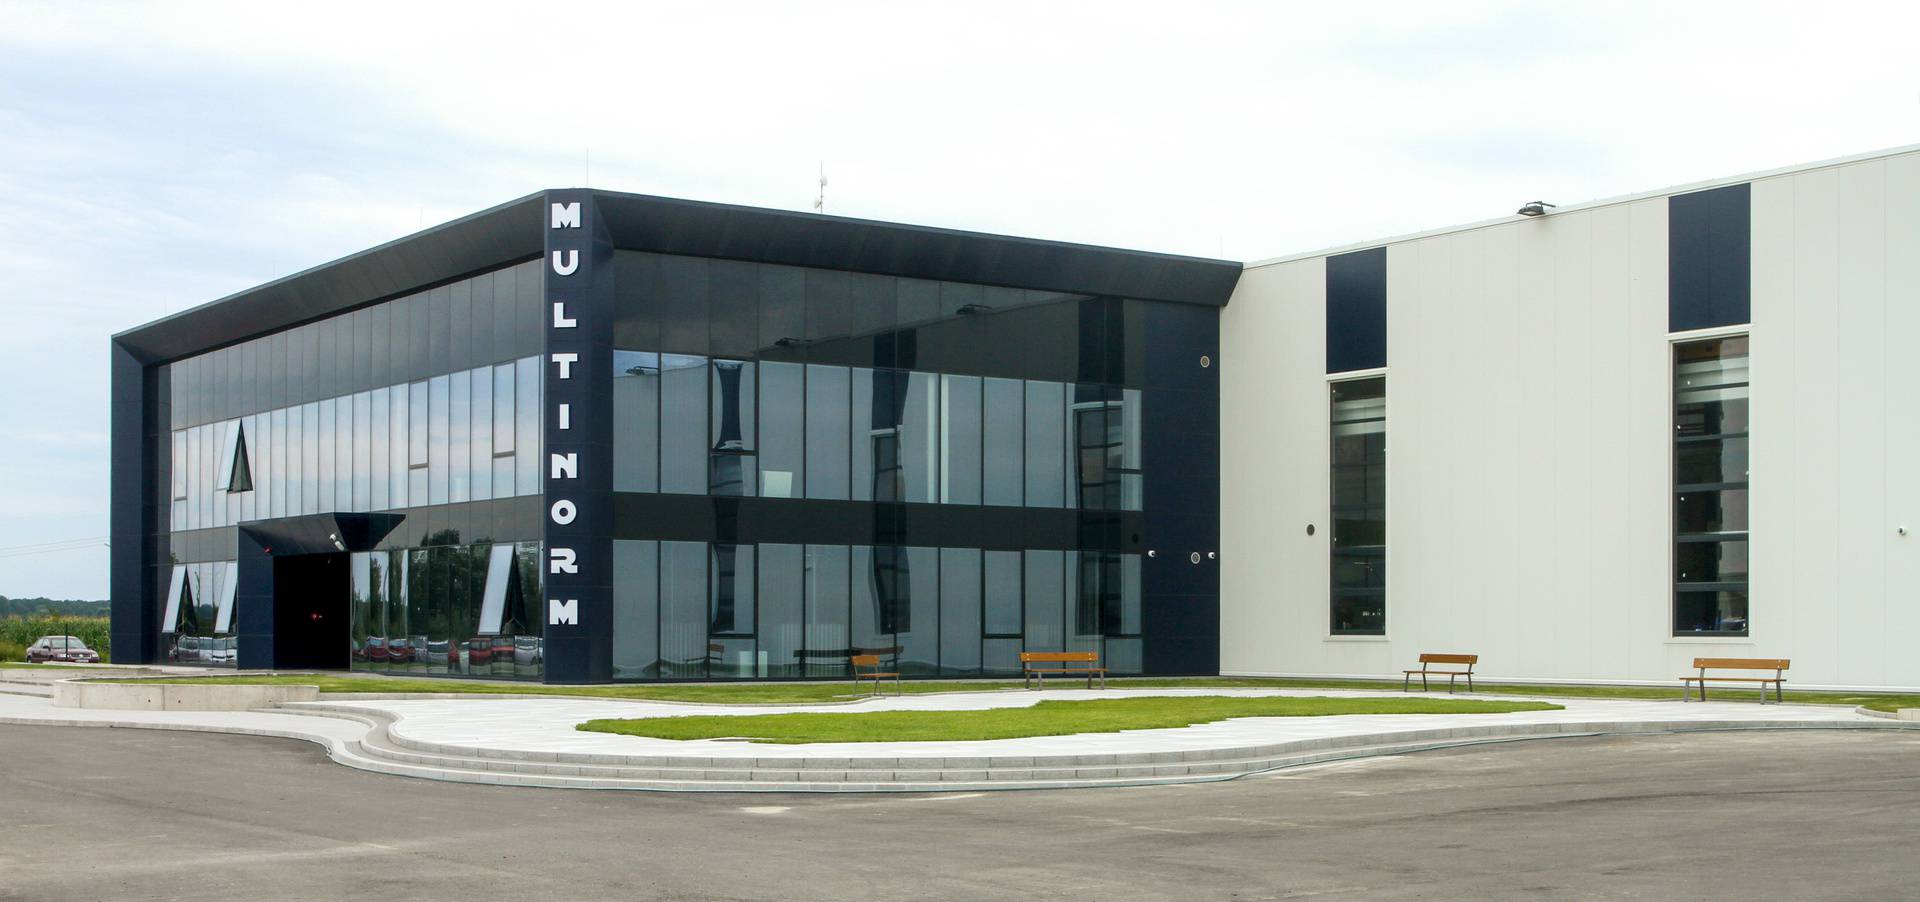 Tvrtka Multinorm iz Cerne sagradila novu proizvodnu halu uz pomoć EU fondova